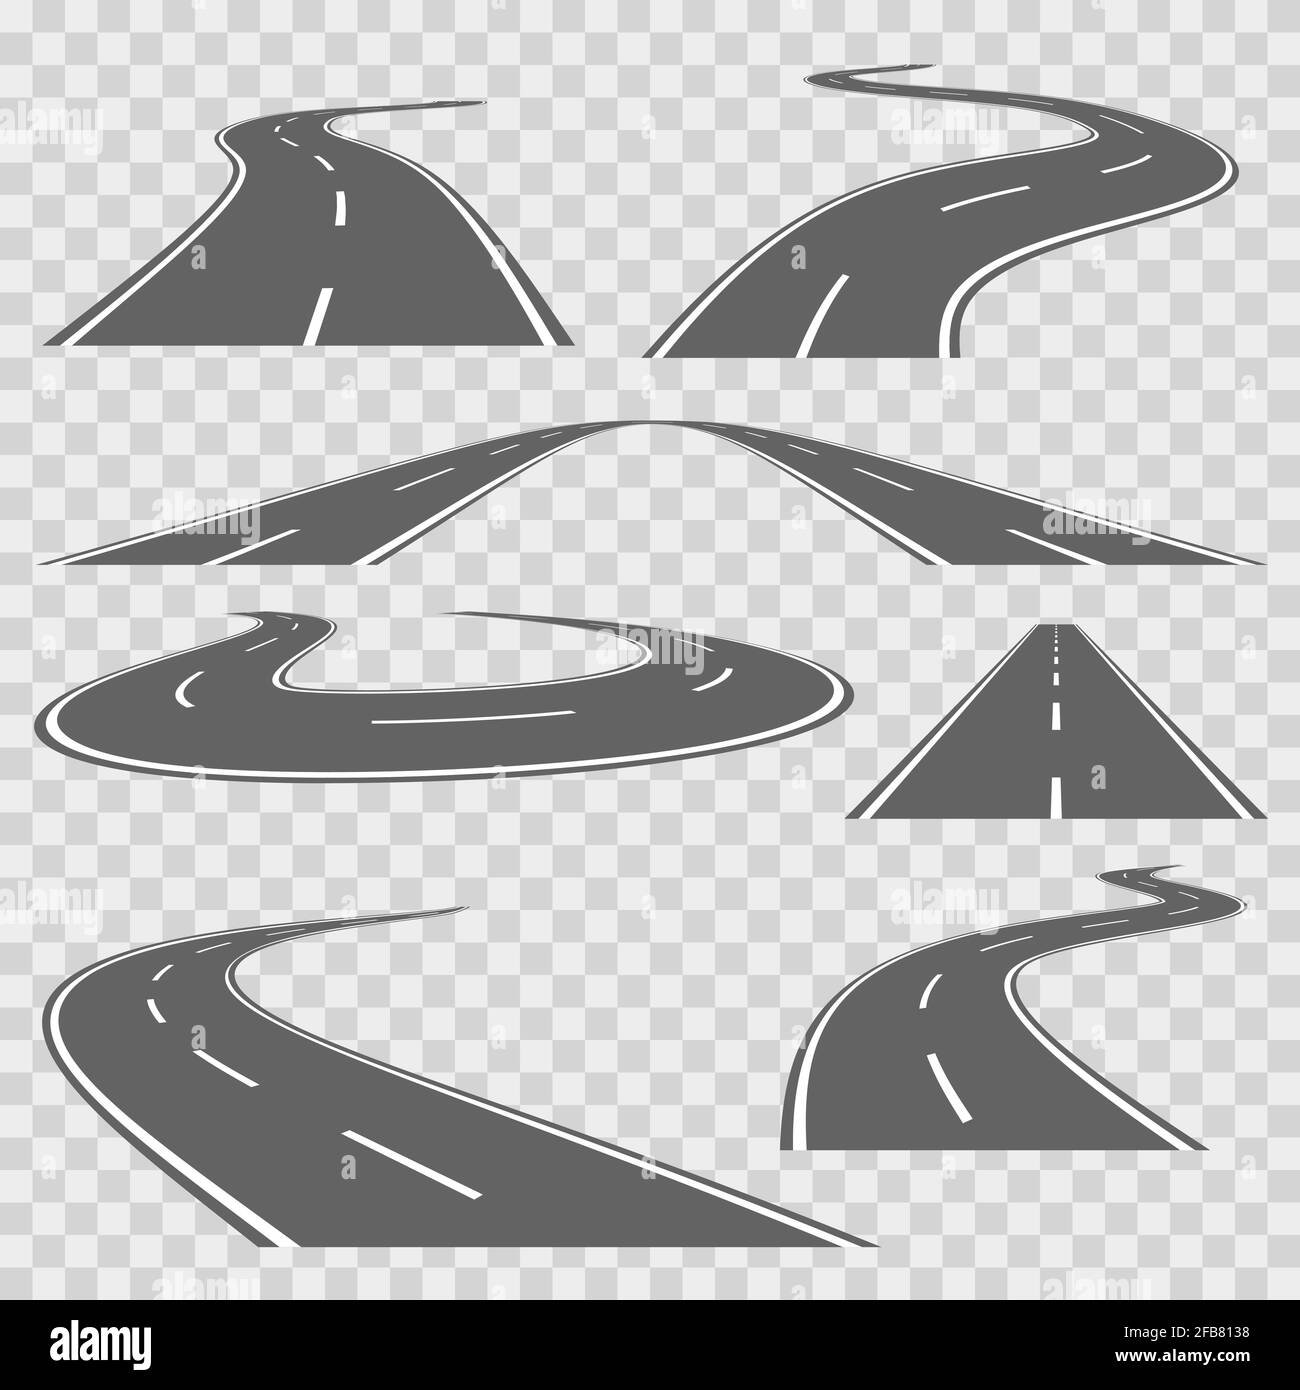 Carretera curva sinuosa o carretera con marcas. Dirección carretera, curva carretera, carretera carretera, ilustración de transporte por carretera. Conjunto de vectores Ilustración del Vector